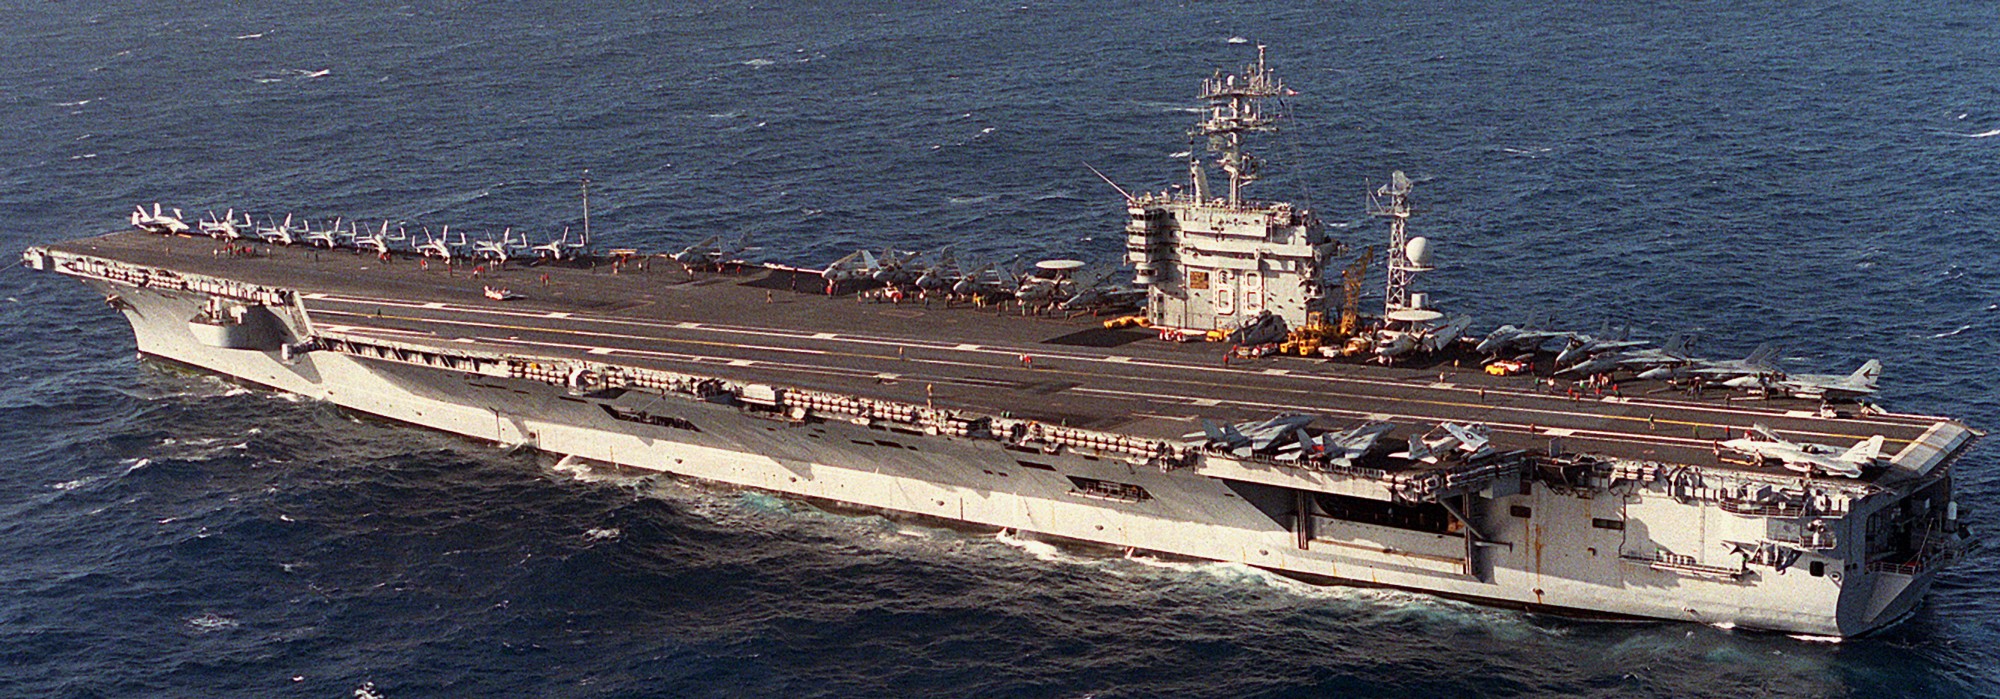 cvn-68 uss nimitz aircraft carrier us navy cvwr-30 60